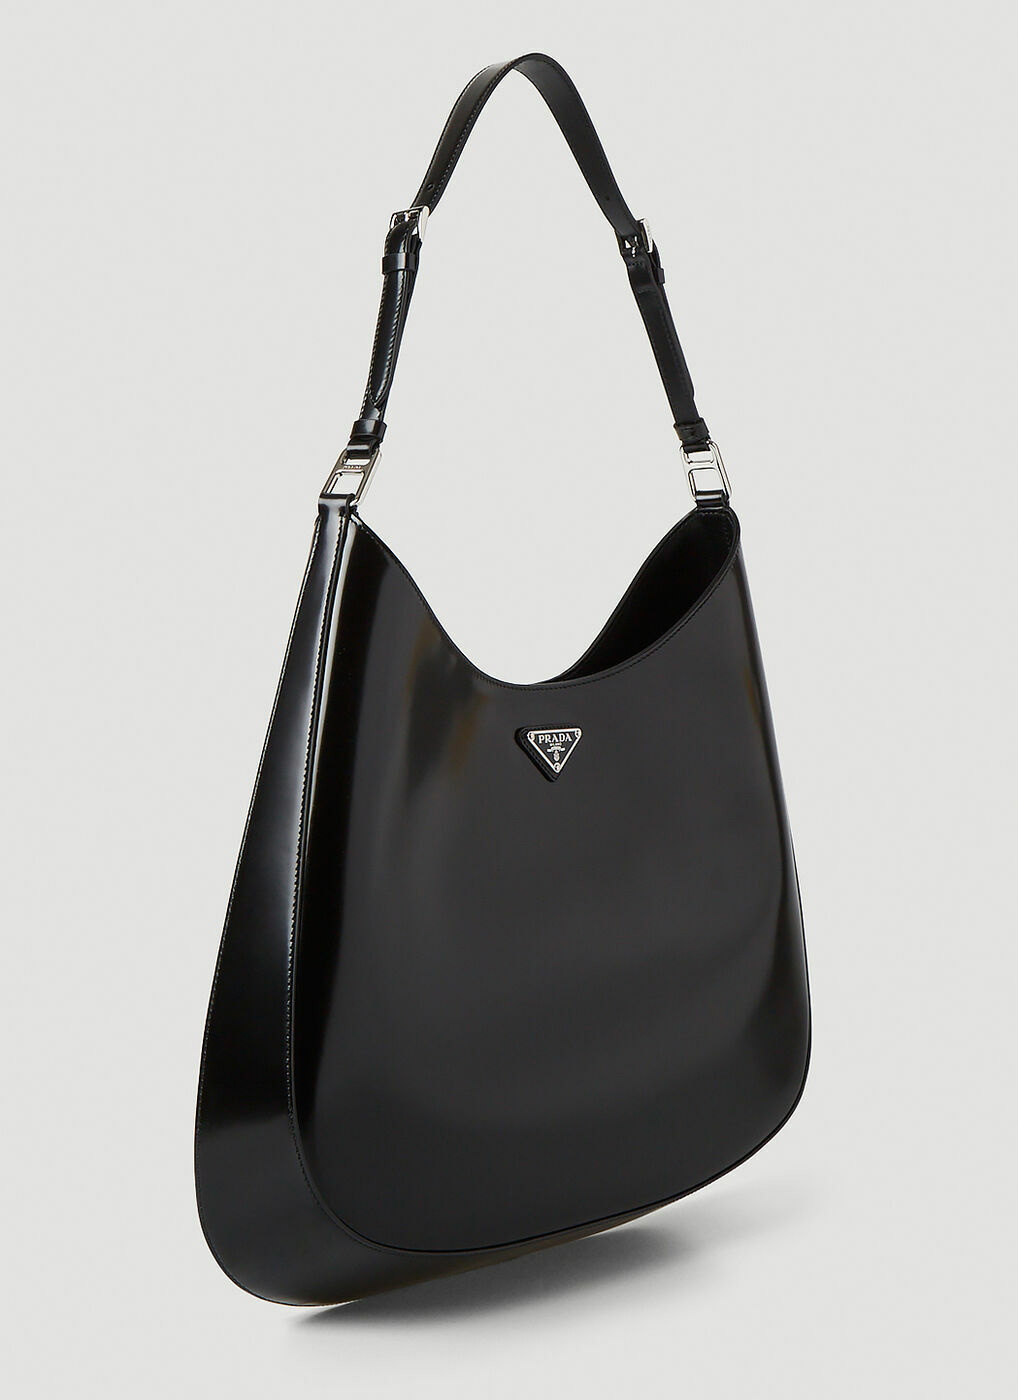 Cleo Large Shoulder Bag in Black Prada